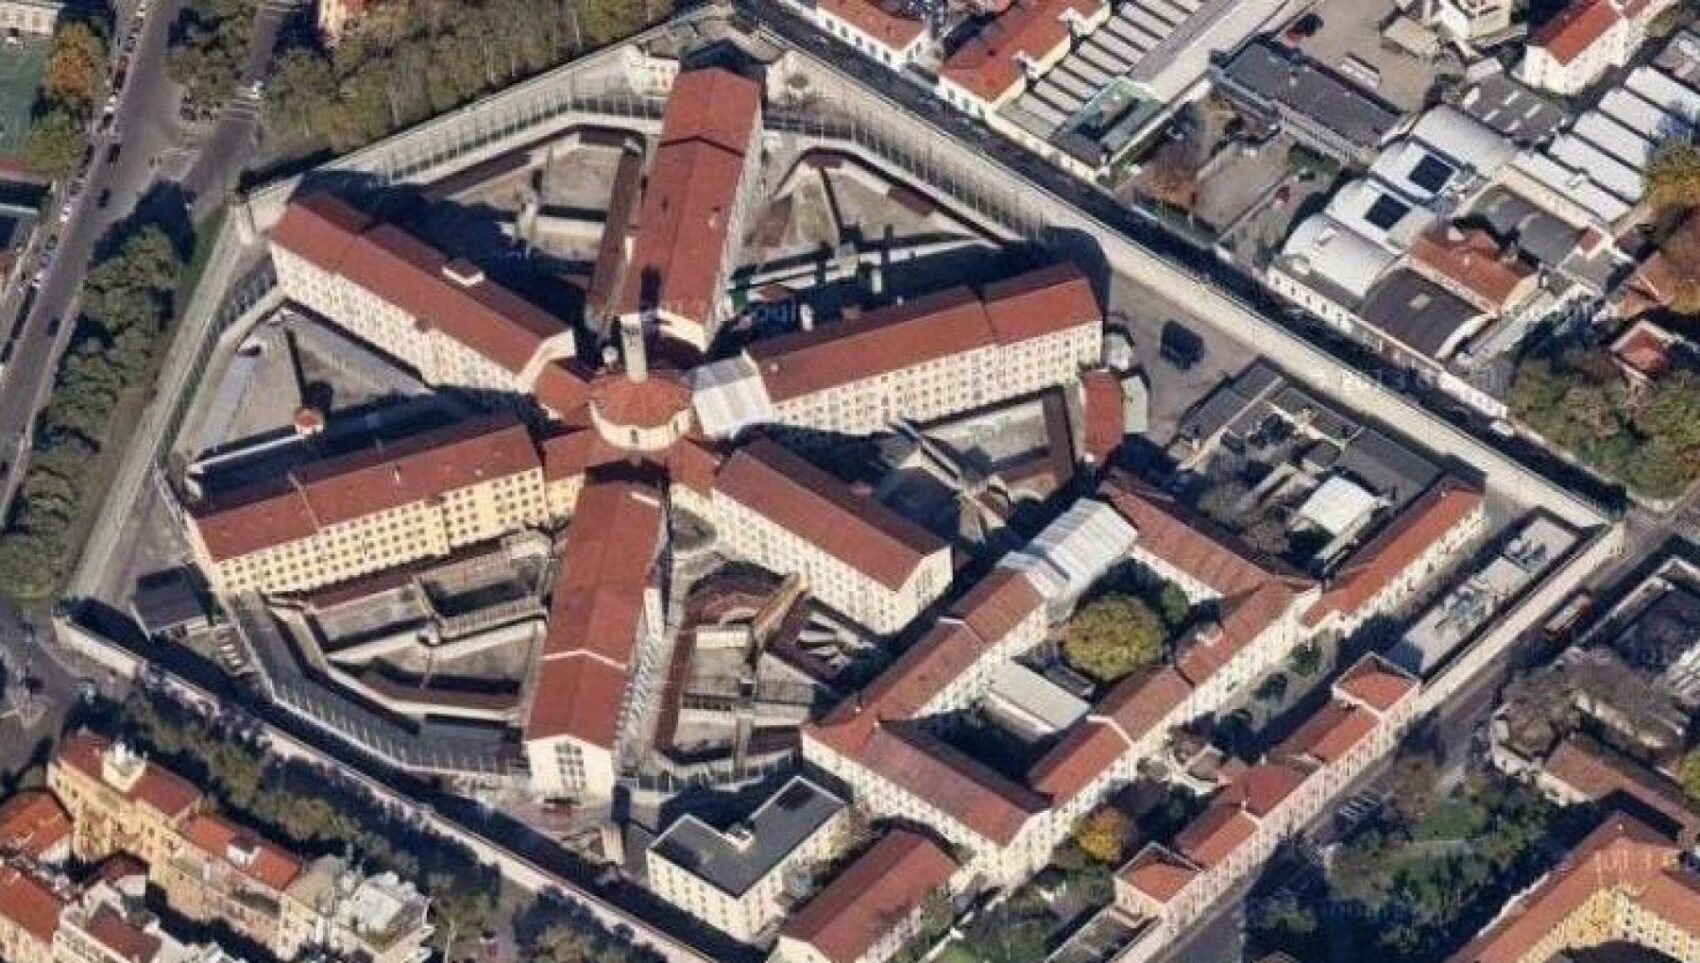 Le carceri in Lombardia scoppiano